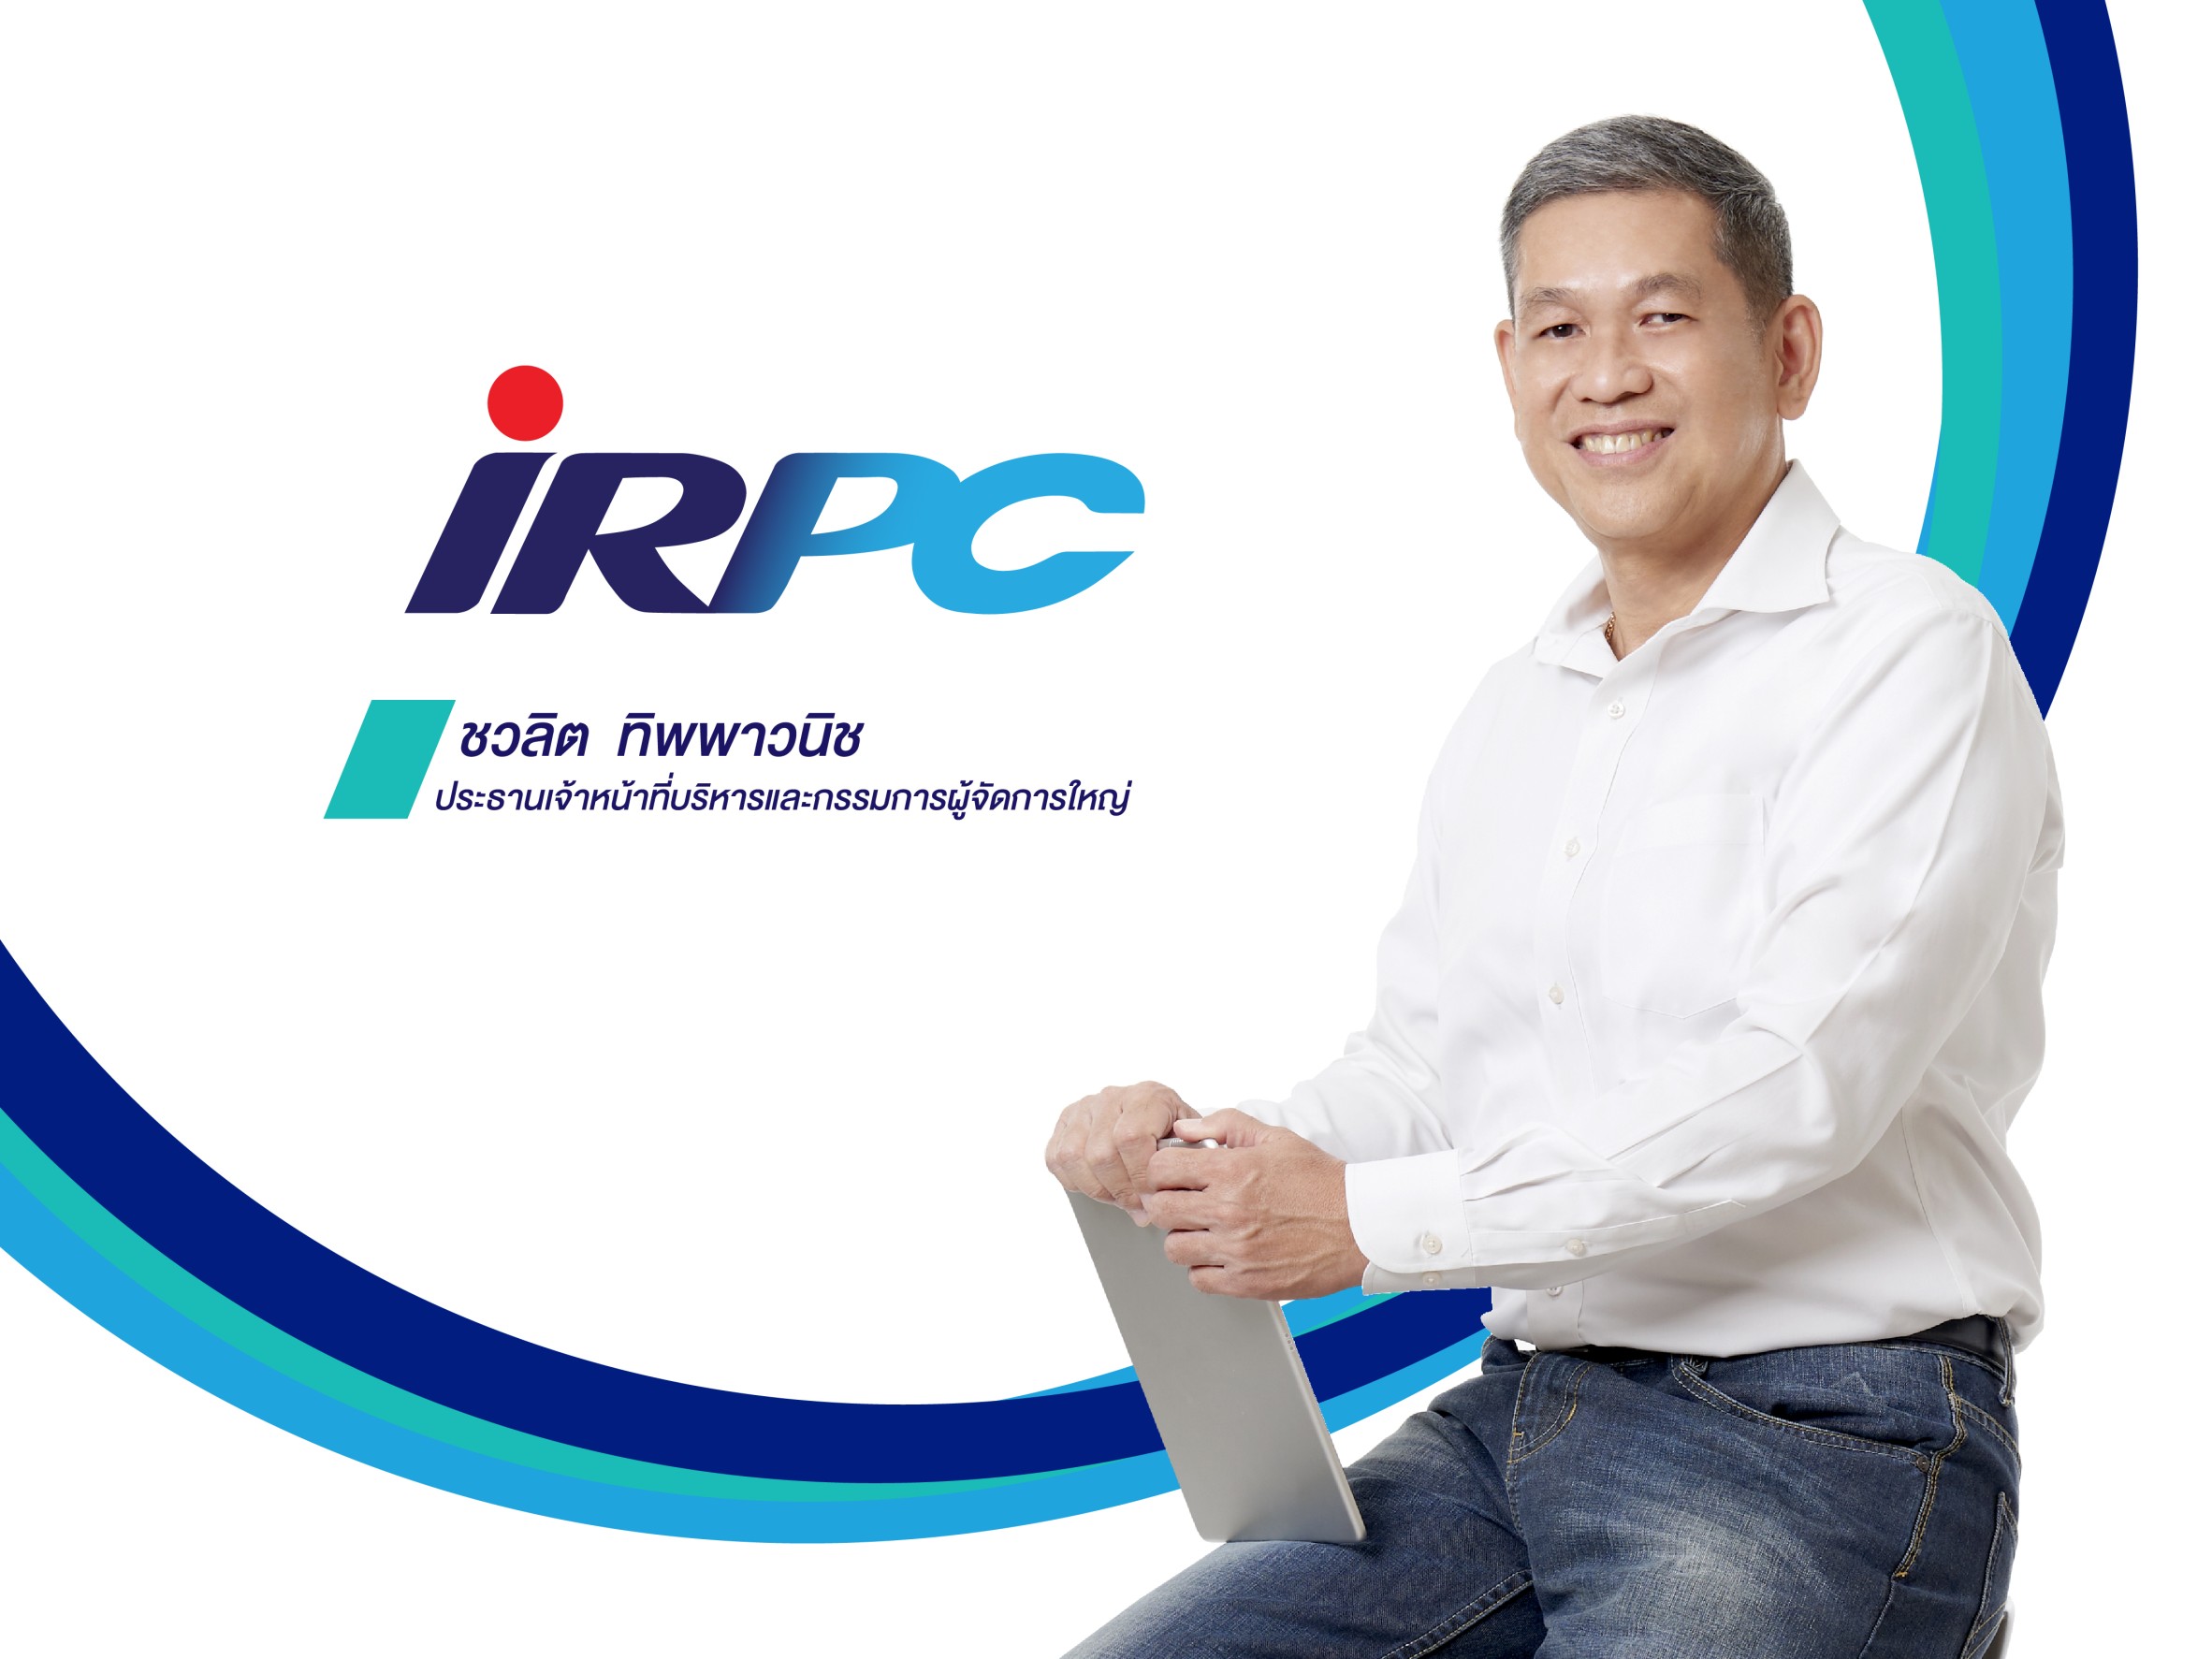 IRPC รับกระแสโลกเปลี่ยนรุกสร้างนวัตกรรมวัสดุและพลังงานแห่งอนาคต